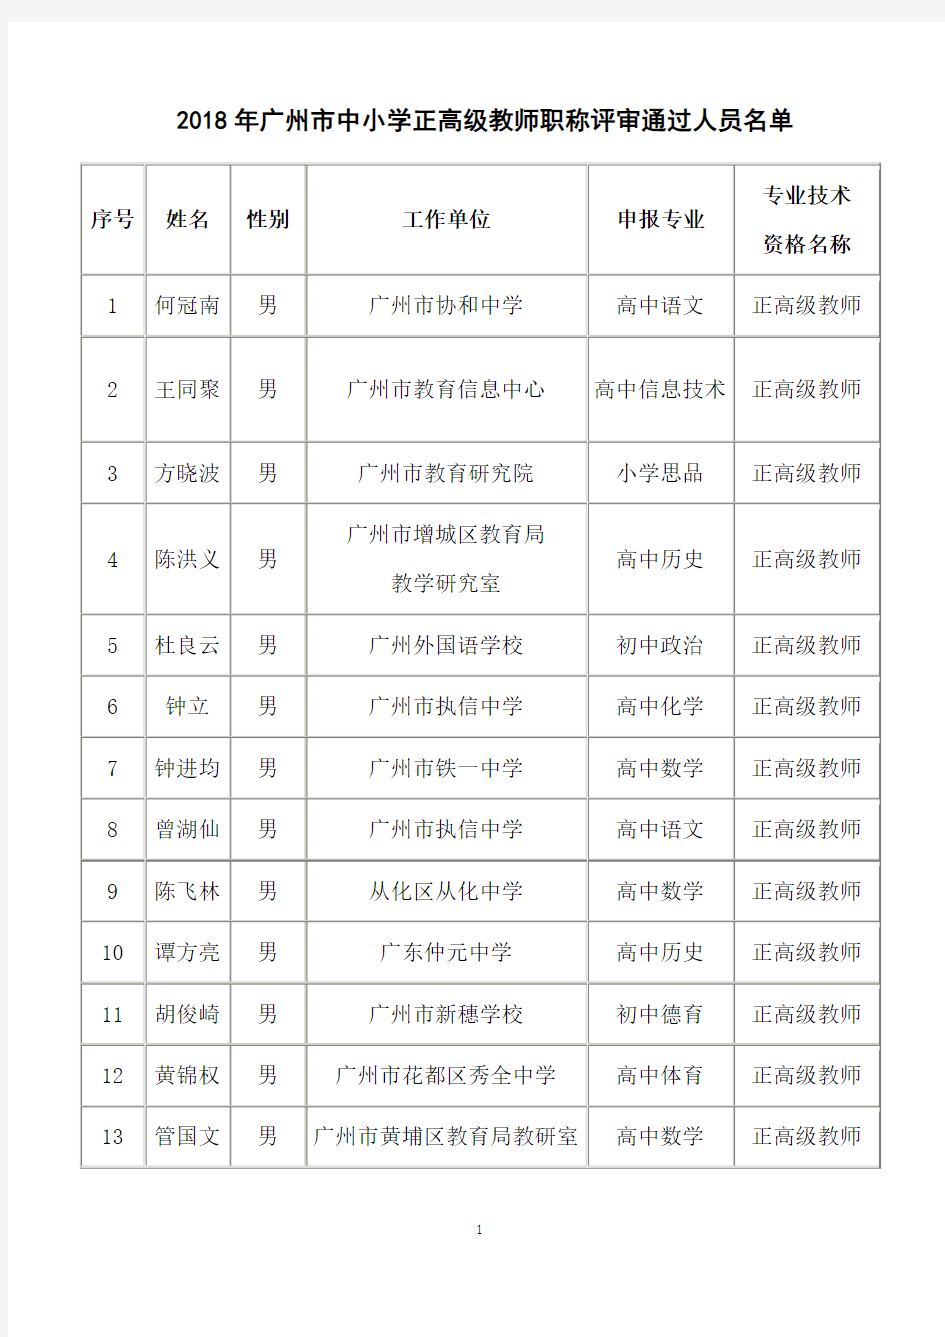 2018年广州中小学正高级教师职称评审通过人员-广州第六中学